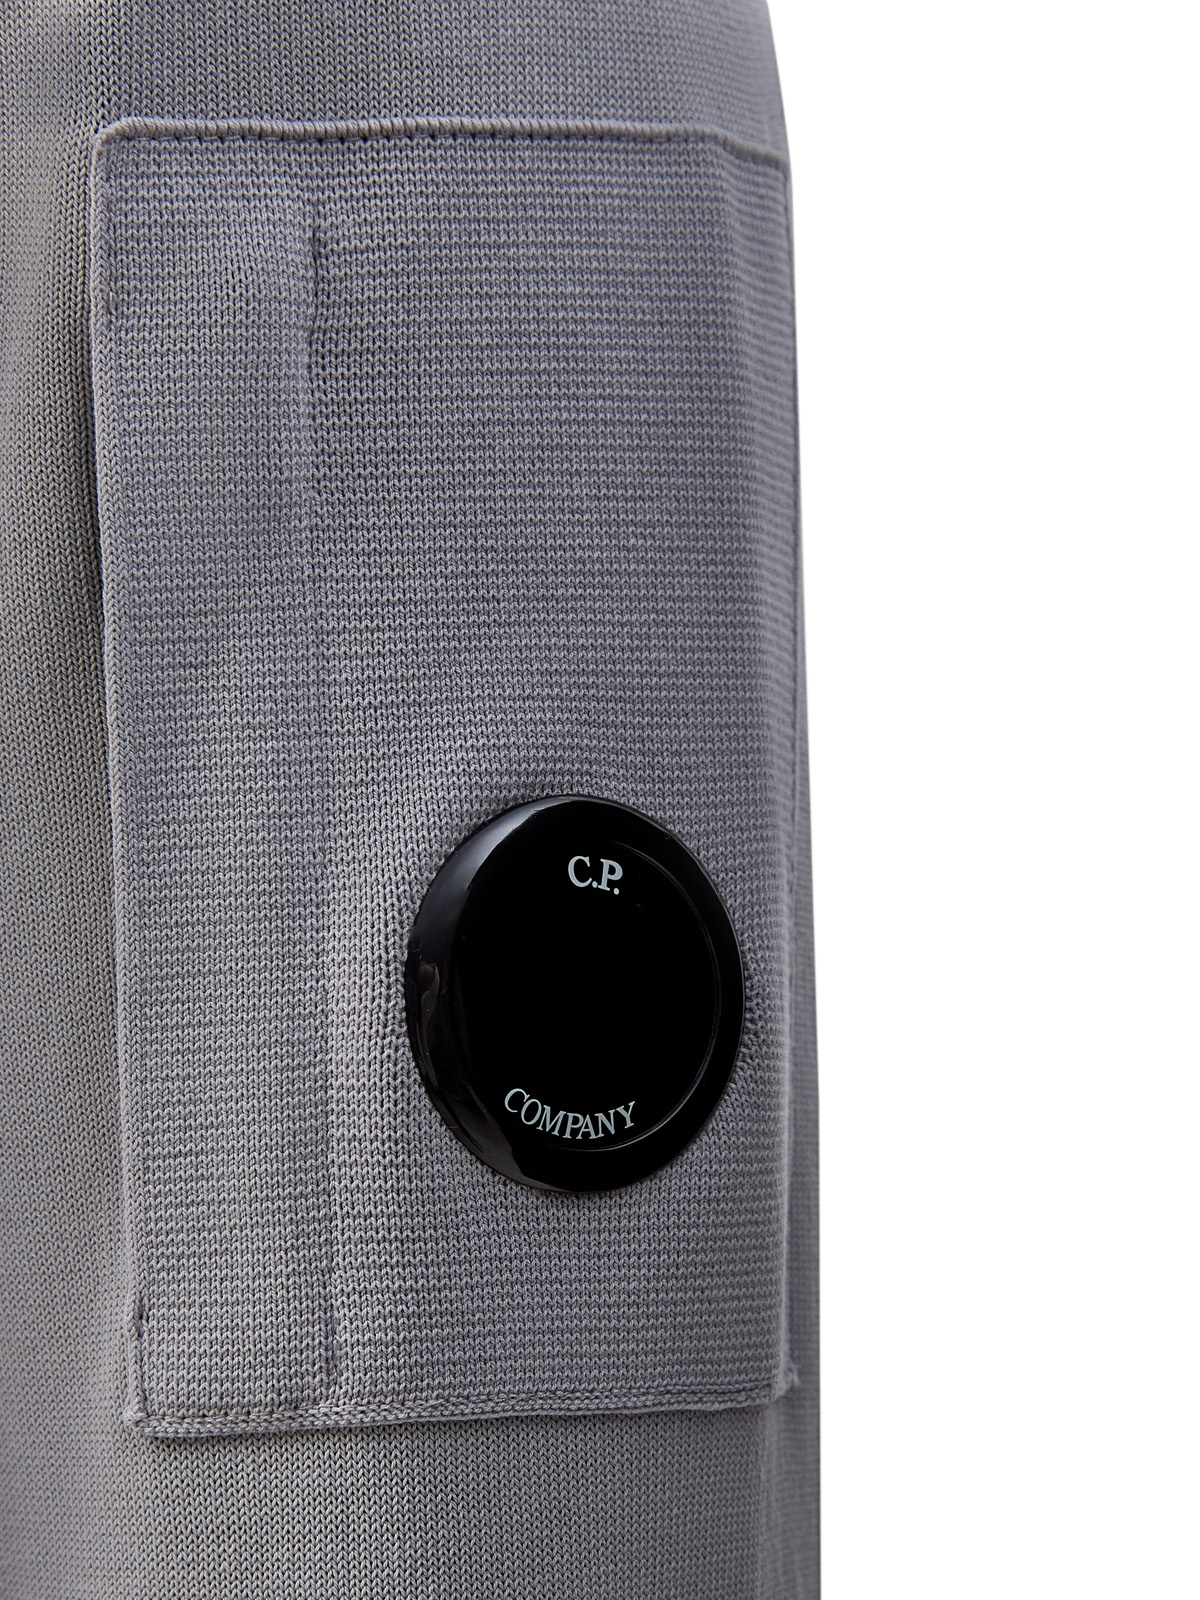 Джемпер из тонкого хлопкового крепа с фирменной линзой C.P. C.P.COMPANY, цвет серый, размер M;L;XL - фото 5